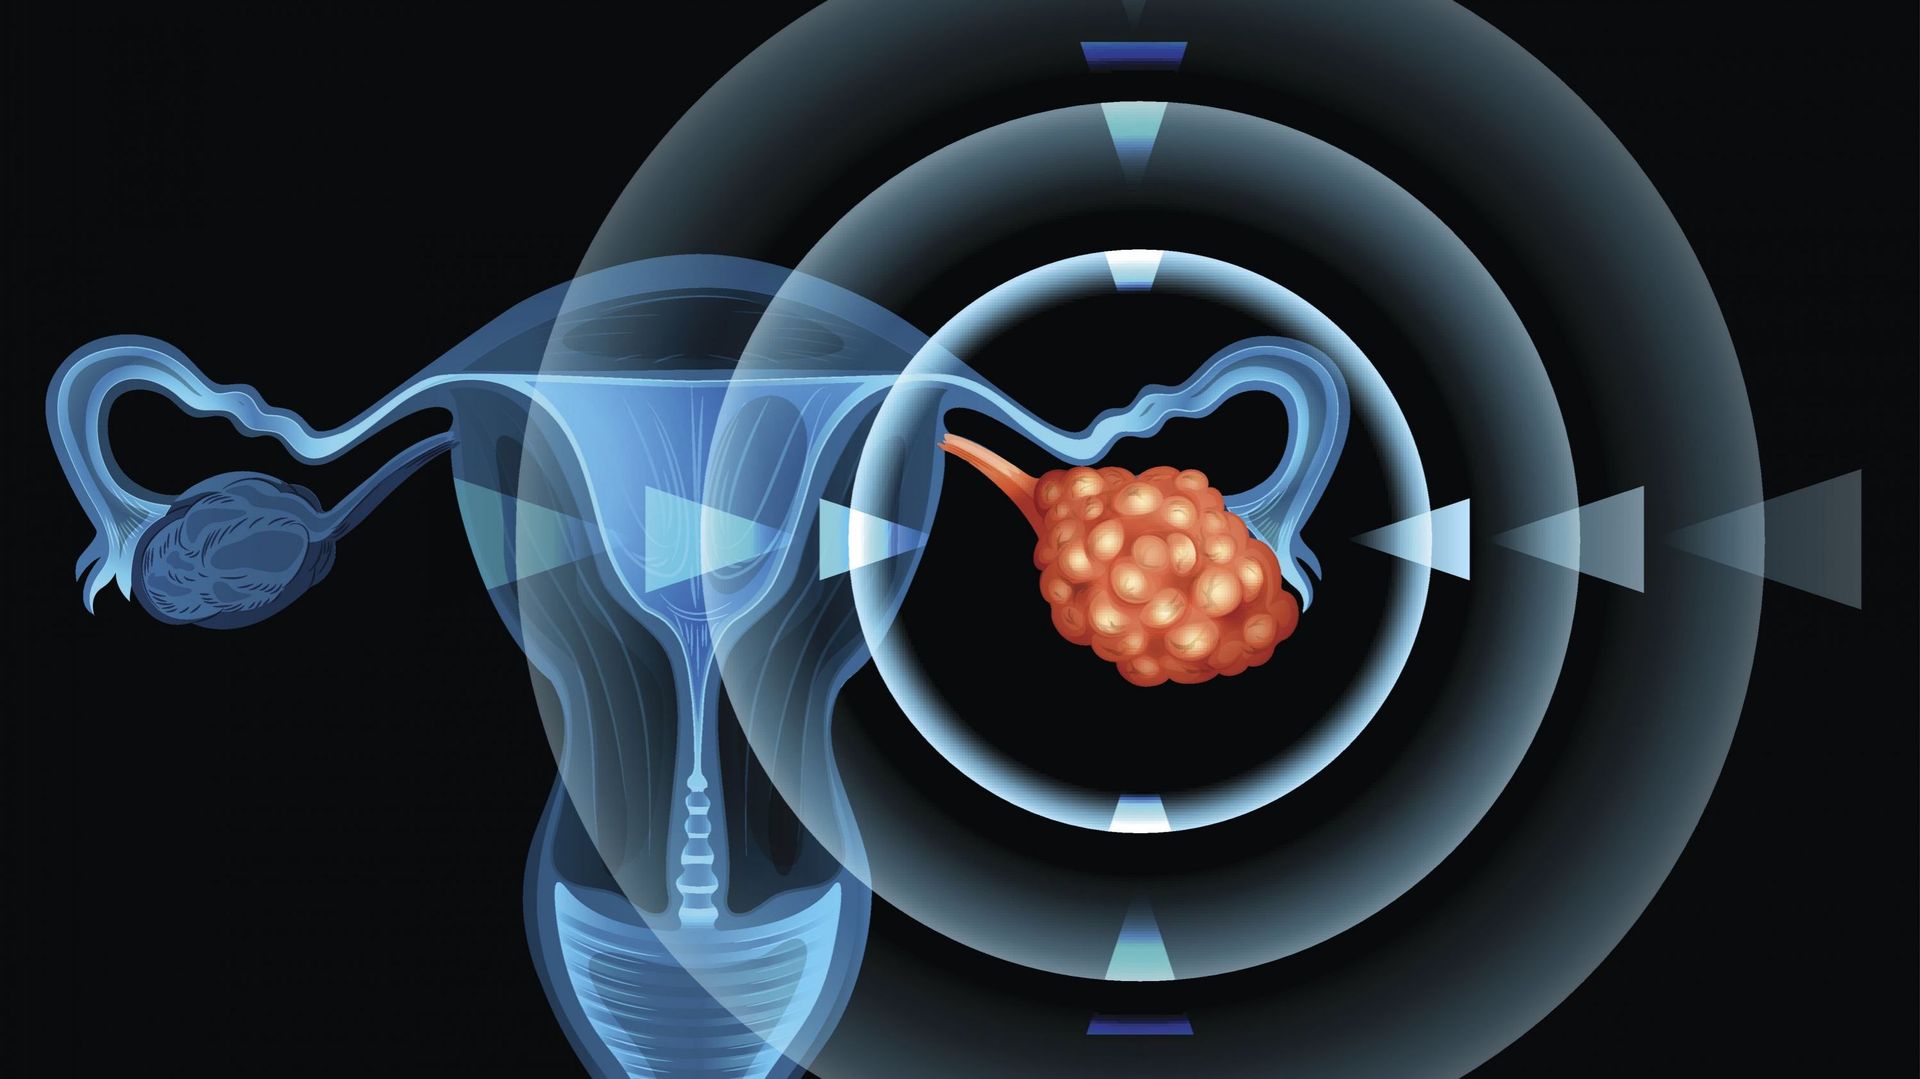 La KULeuven développe un test permettant un traitement personnalisé contre le cancer de l’ovaire. Illustration du cancer de l’ovaire